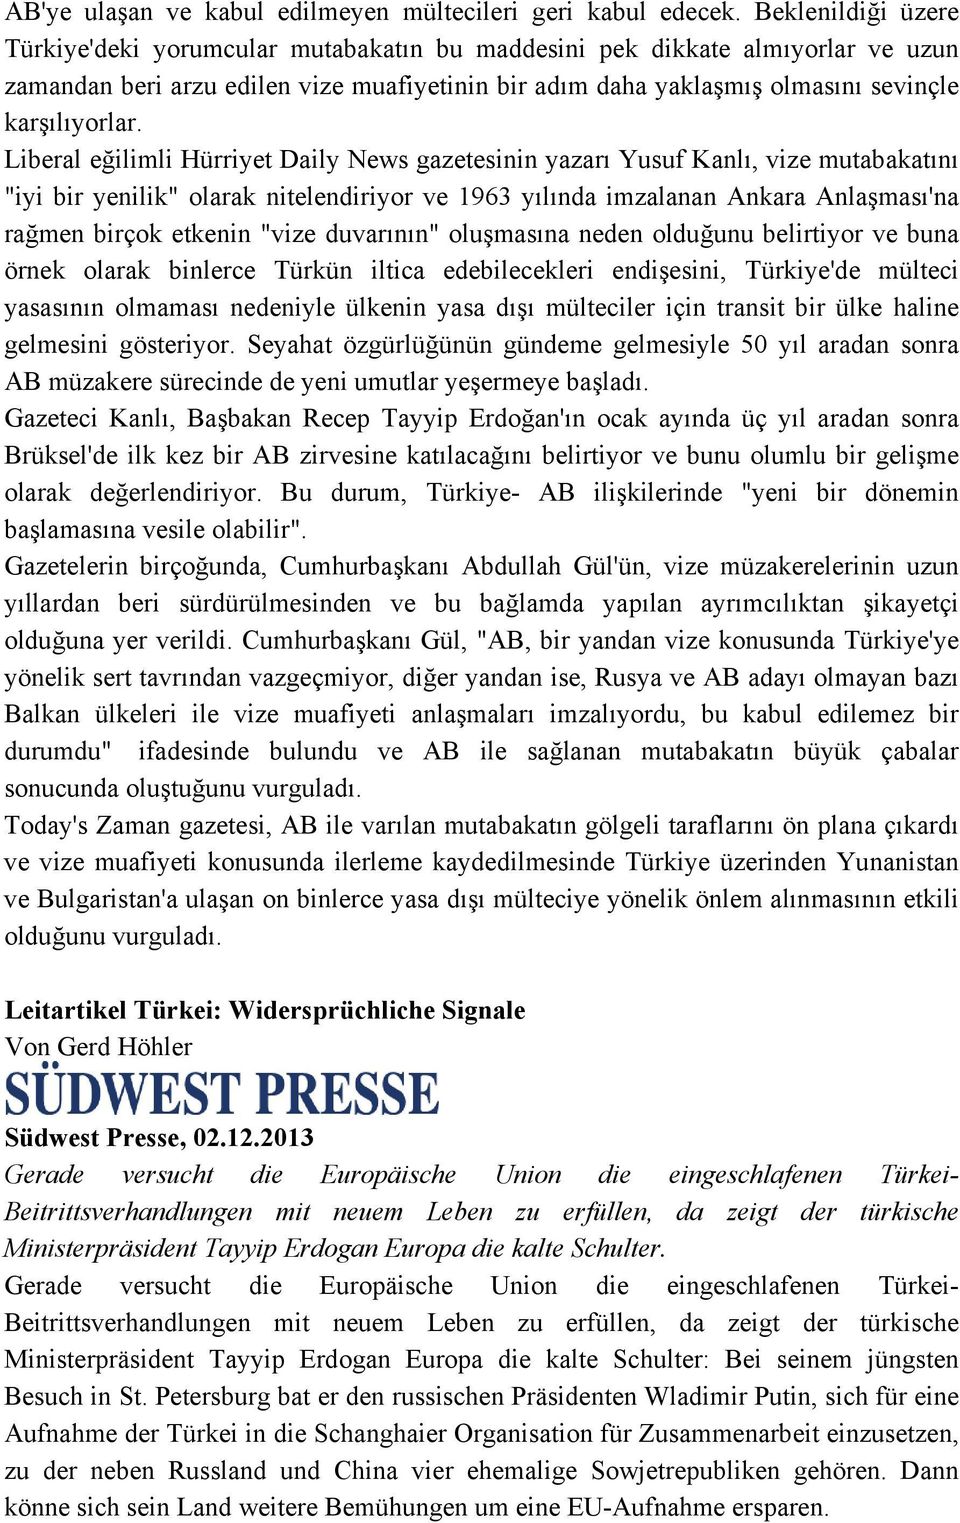 Liberal eğilimli Hürriyet Daily News gazetesinin yazarı Yusuf Kanlı, vize mutabakatını "iyi bir yenilik" olarak nitelendiriyor ve 1963 yılında imzalanan Ankara Anlaşması'na rağmen birçok etkenin